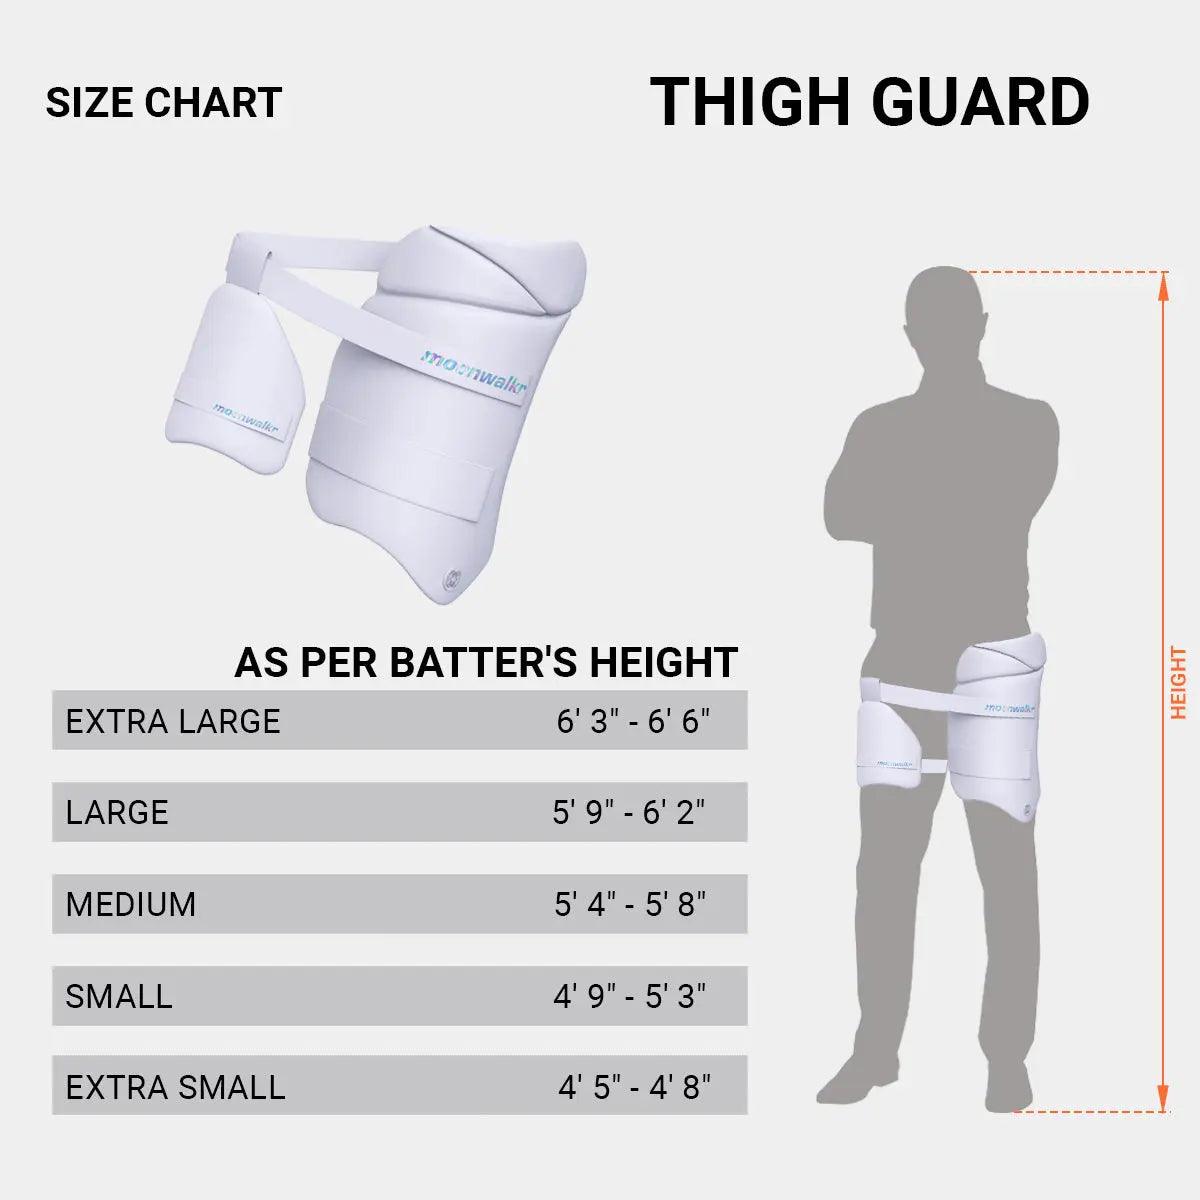 Thigh Guards 2.0 moonwalkrindia